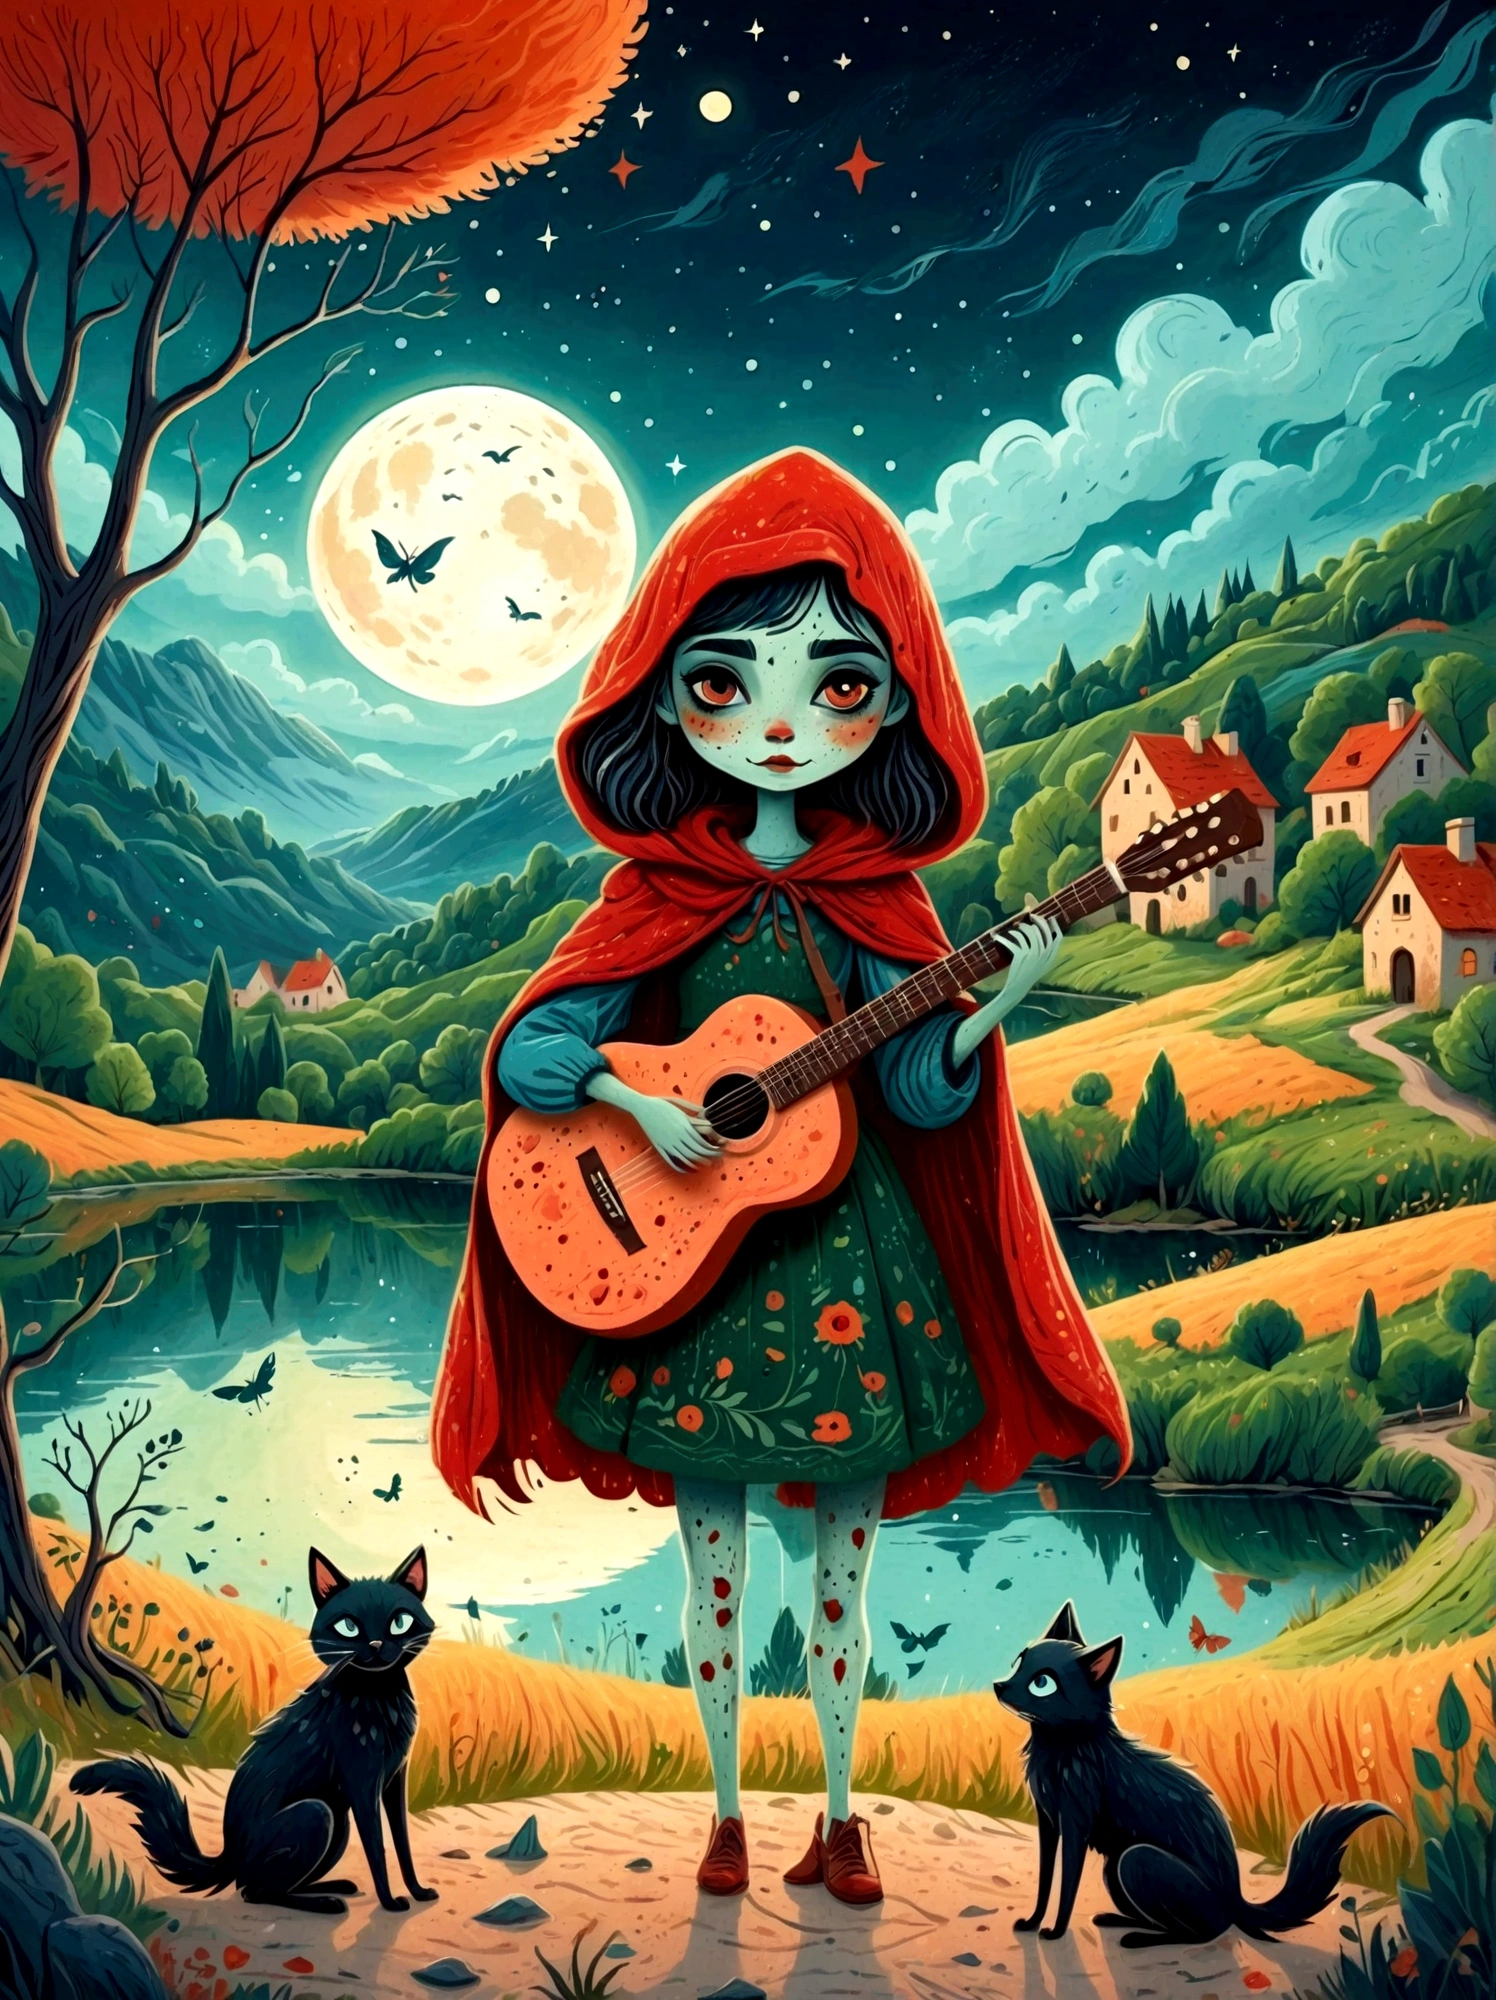 卡通手绘, 1個女孩, 獨自的, 可爱年轻迷人的小红帽女孩，浓浓僵尸妆, 弹奏一把旧吉他，吉他手，幽灵观察者，湖边破败的村庄, 一片黑暗的森林和一座葡萄园，繁星點點的夜晚，陰沉有霧的氣氛，可爱的荒谬，非凡外表的吸引与拒绝，神奇的天真藝術，明亮的蓝色和绿色，调色板是红色, 橙色和黑色的色调，具有粗略的风格, 背景应该有简单的手绘涂鸦图案, 1shxx1